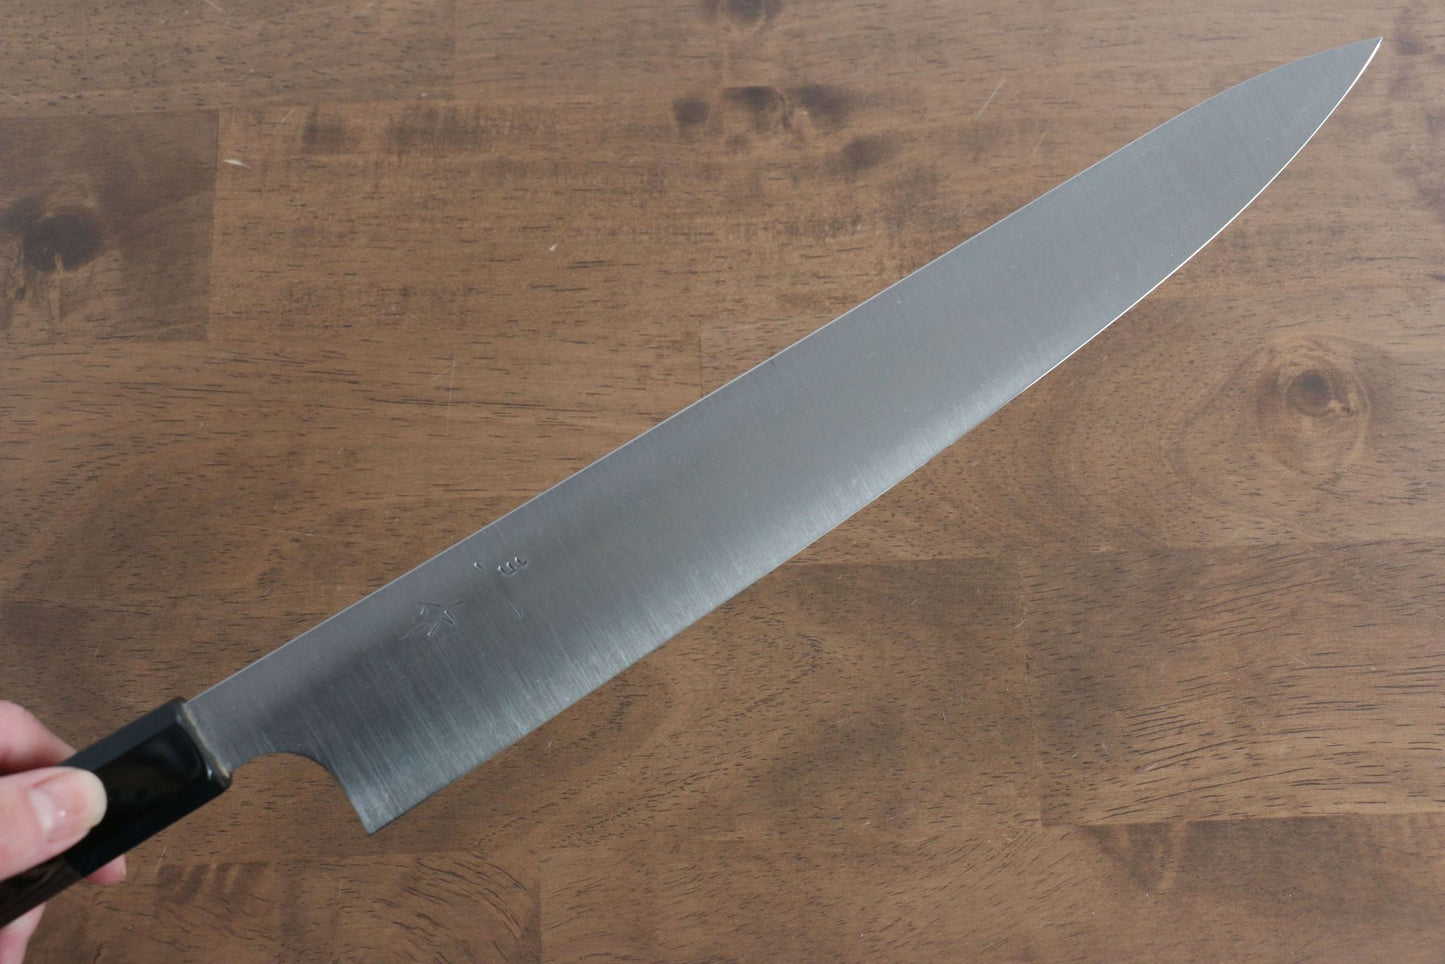 Kei Kobayashi Marke R2/SG2 Spezialisiertes geripptes Messer Sujihiki Japanisches Messer 270 mm Wenge-Holzgriff